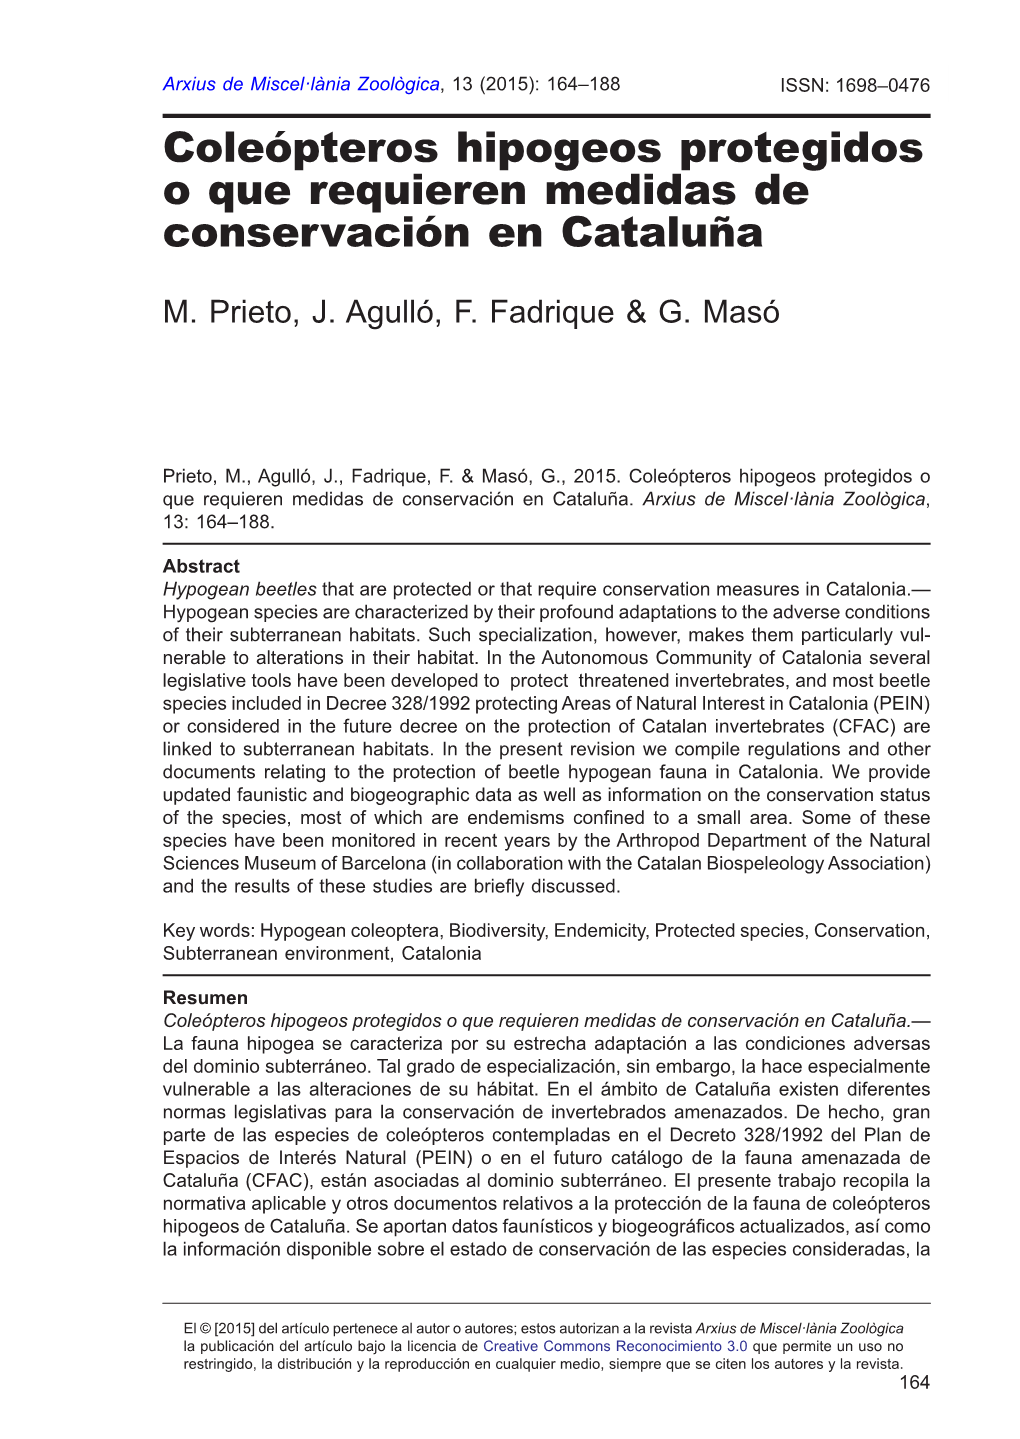 Coleópteros Hipogeos Protegidos O Que Requieren Medidas De Conservación En Cataluña